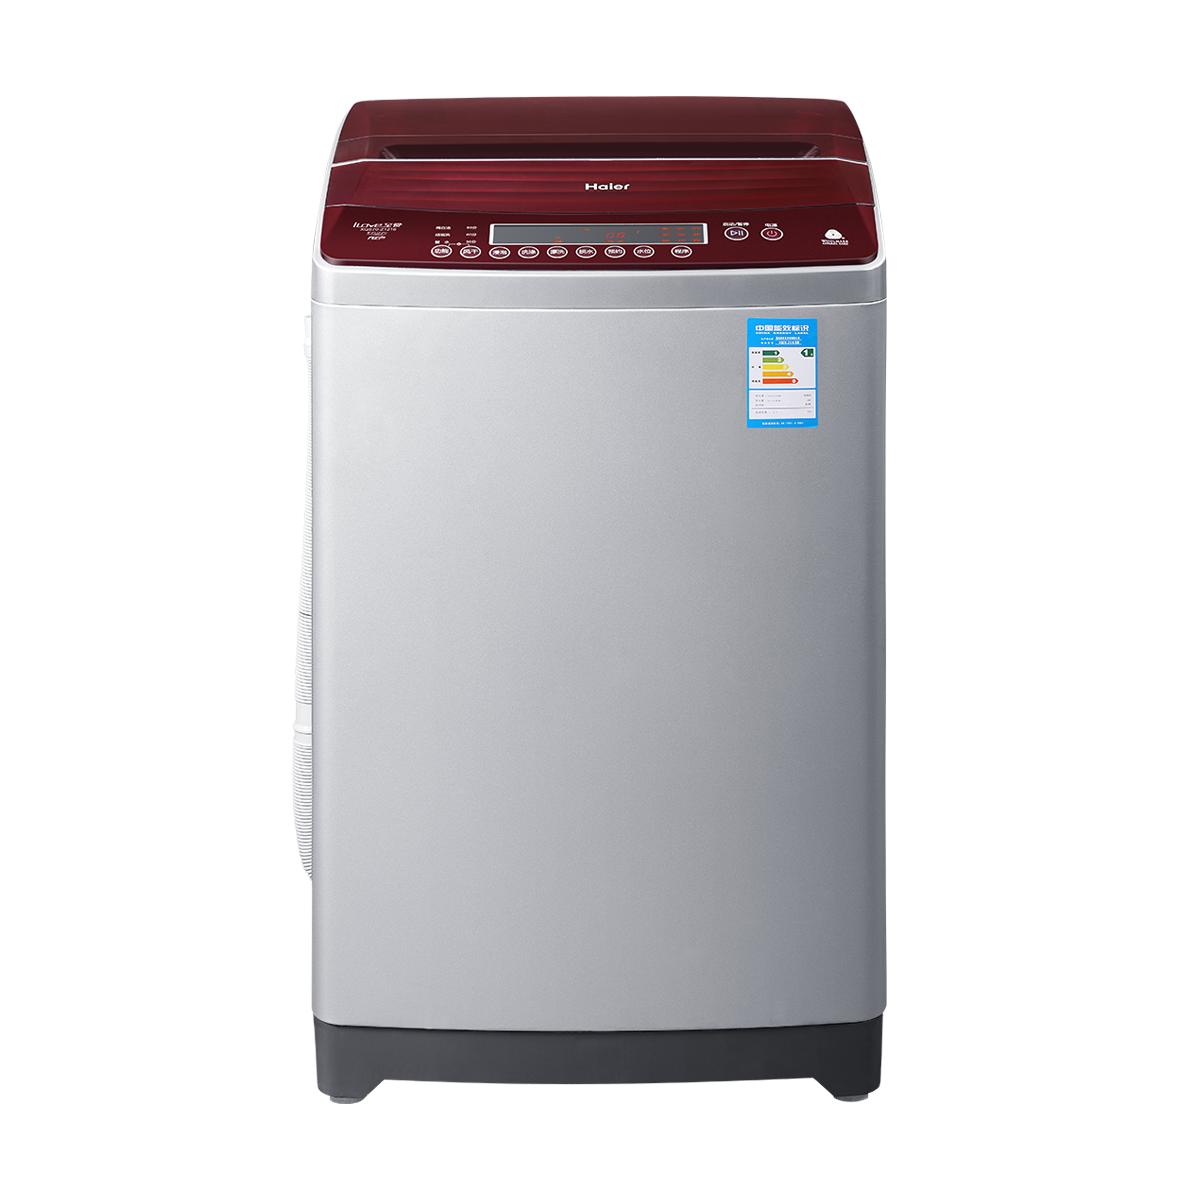 海尔Haier洗衣机 XQS70-Z1216 说明书